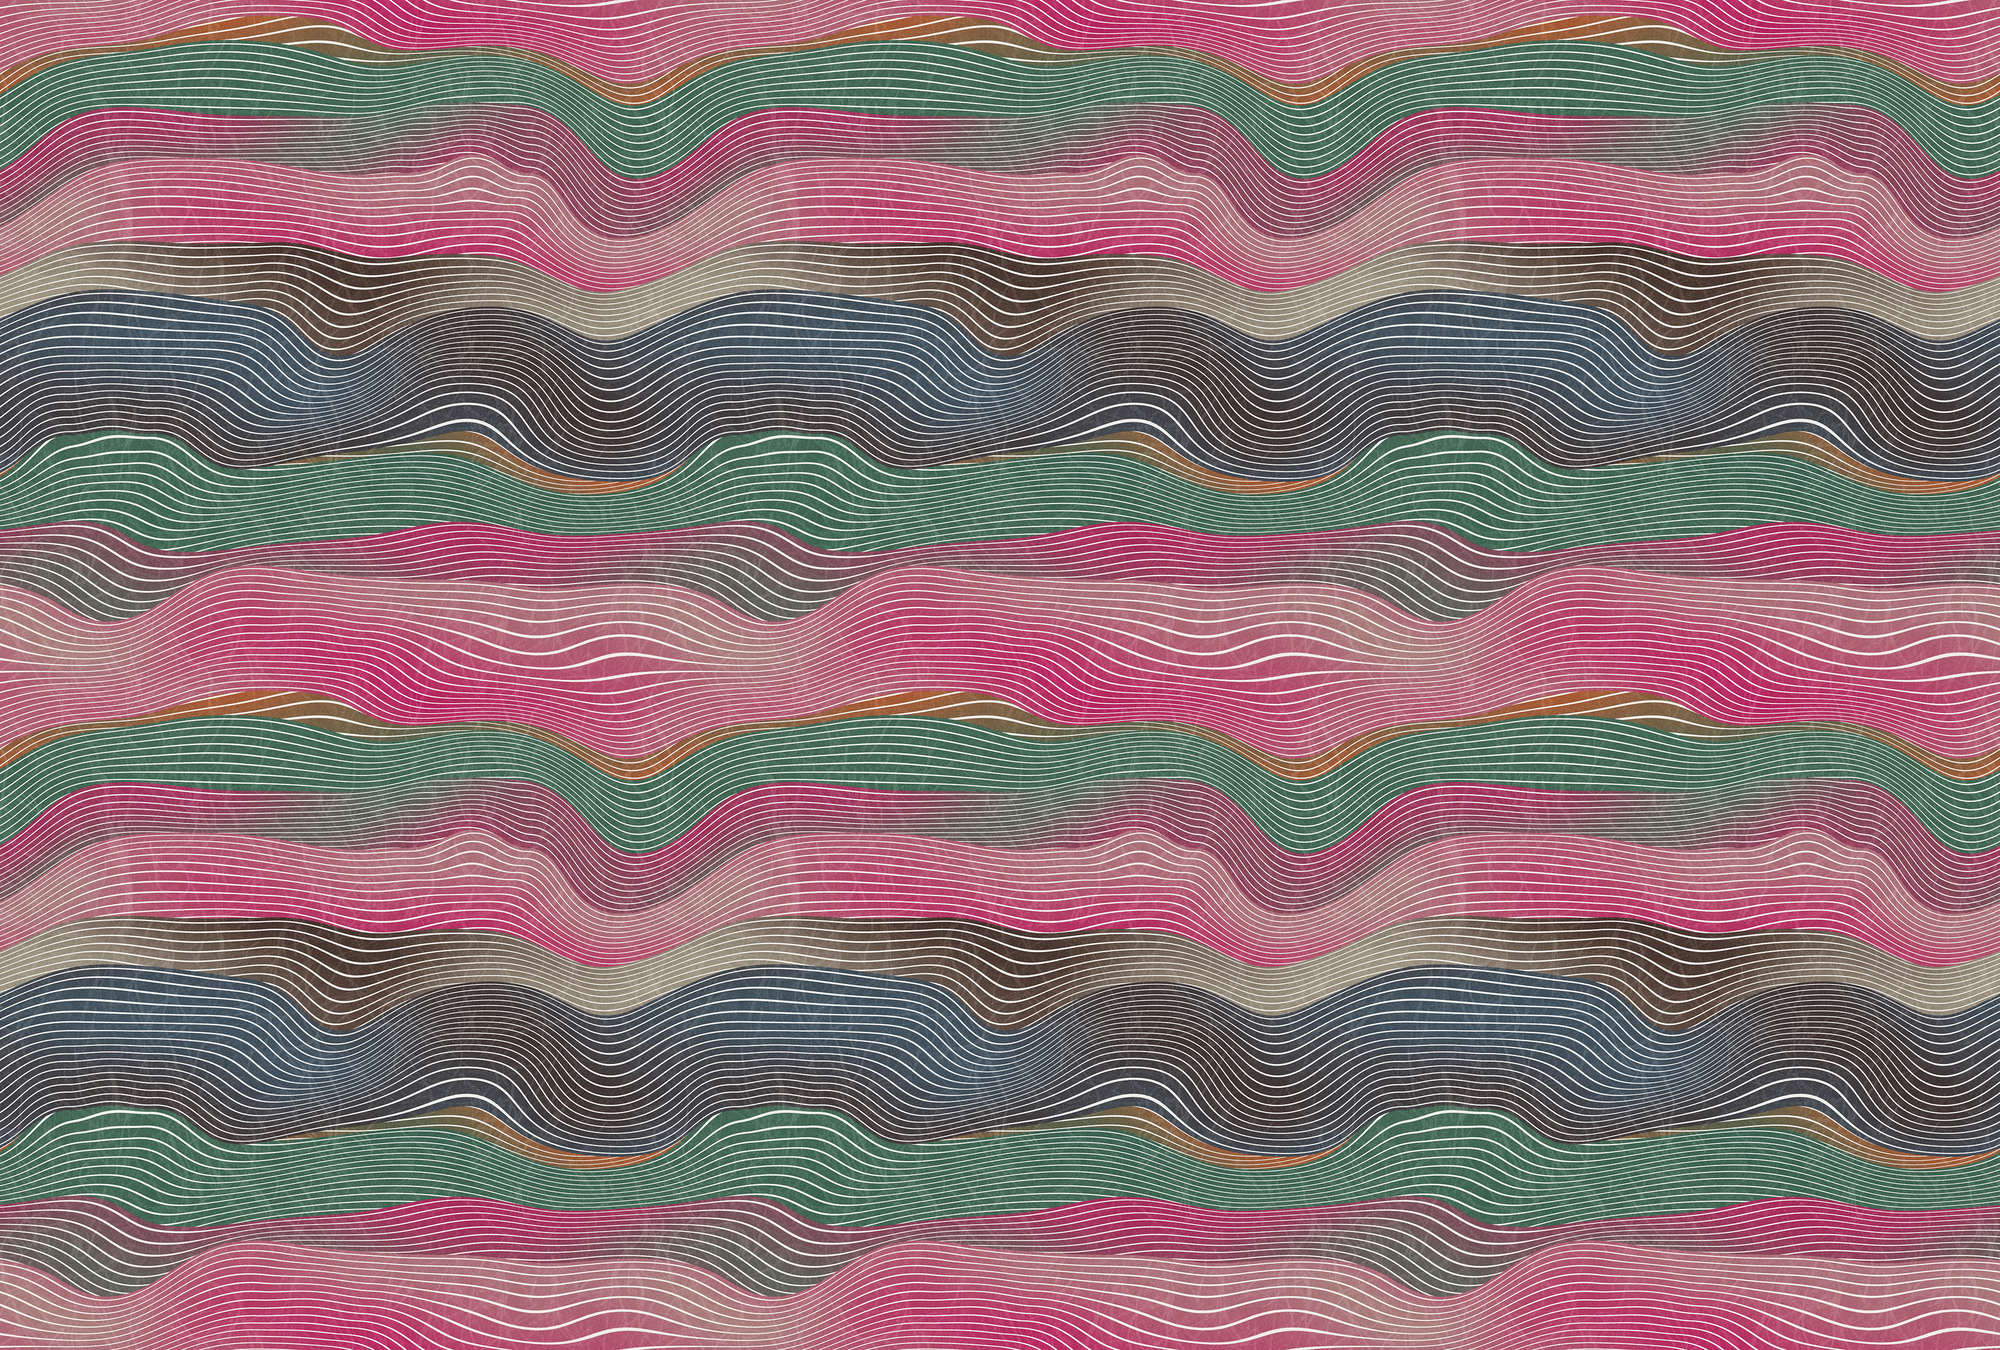             Space 1 – Fototapete Wellen Muster Pink & Grün im Retro Stil
        